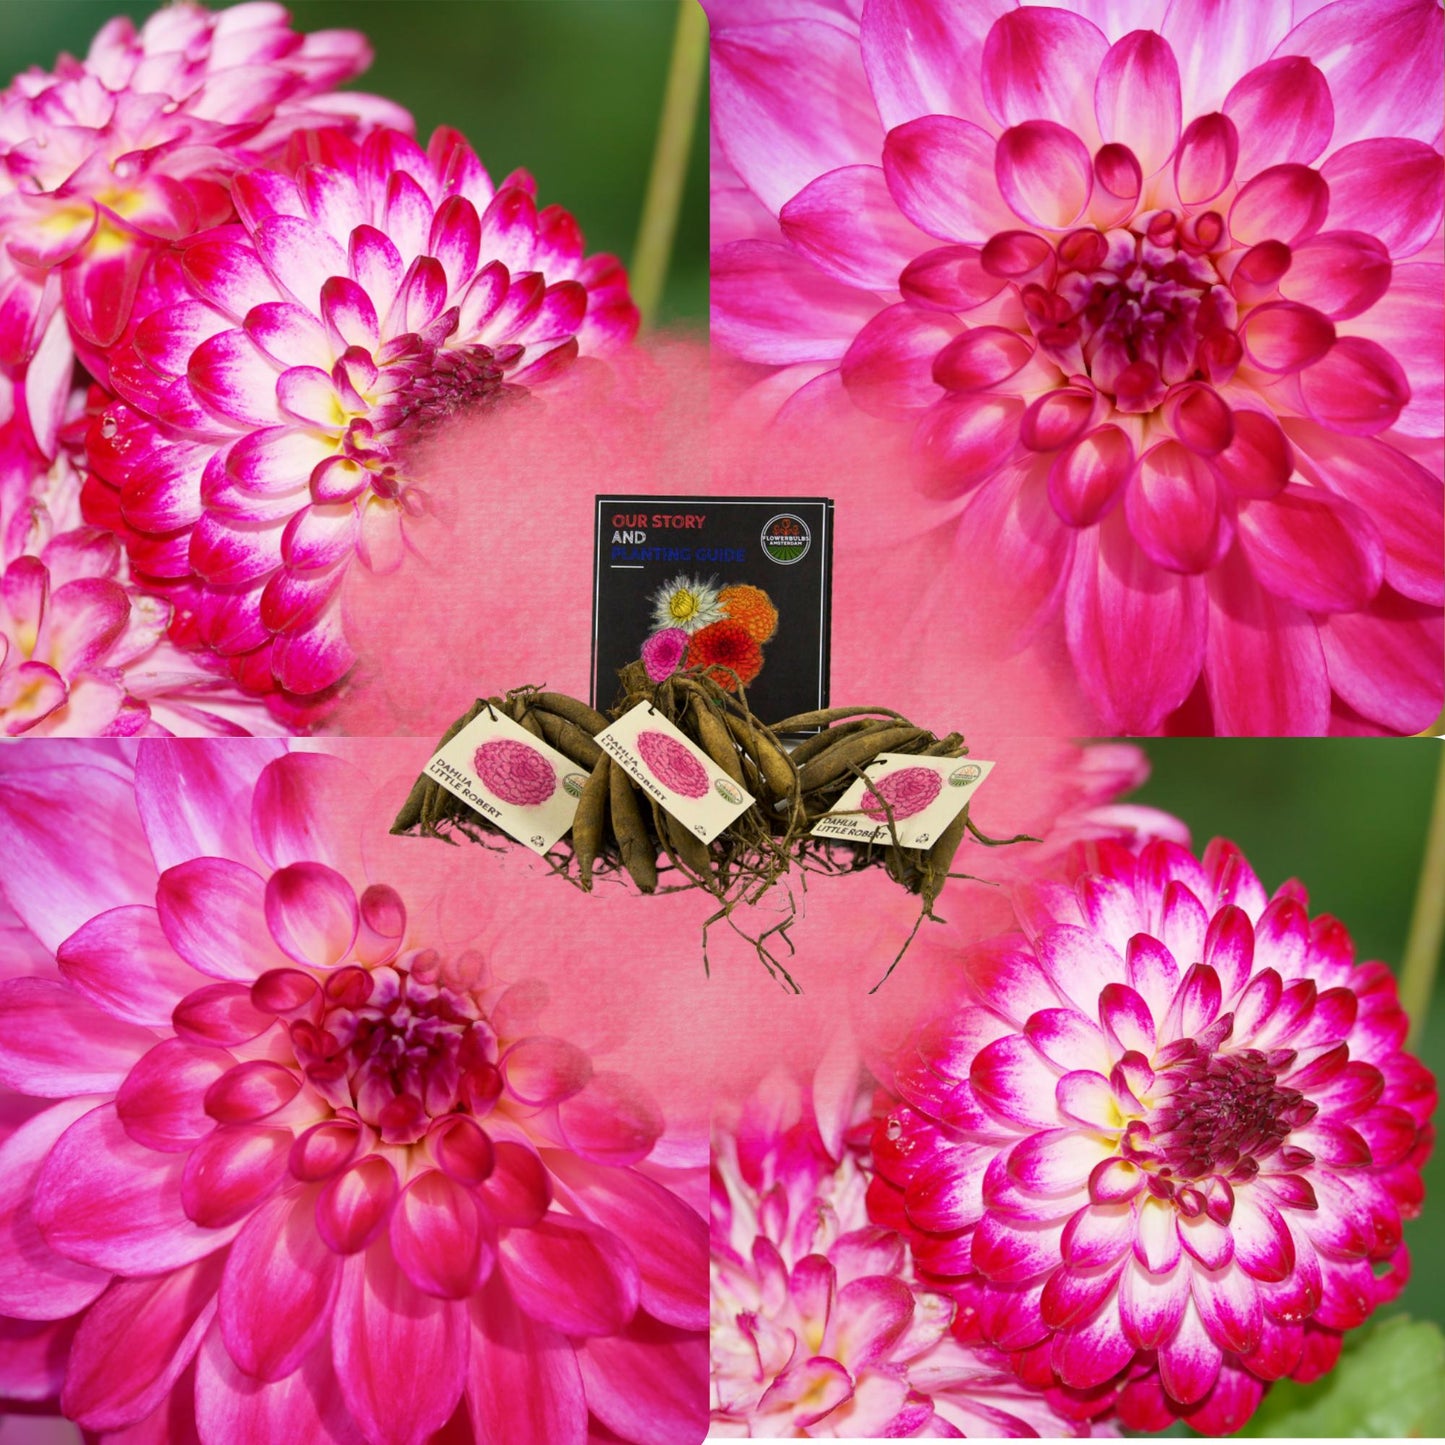 Dahlia Little Robert | Pompom bloembollen  | Roze ronde en opgekrulde bloemblaadjes